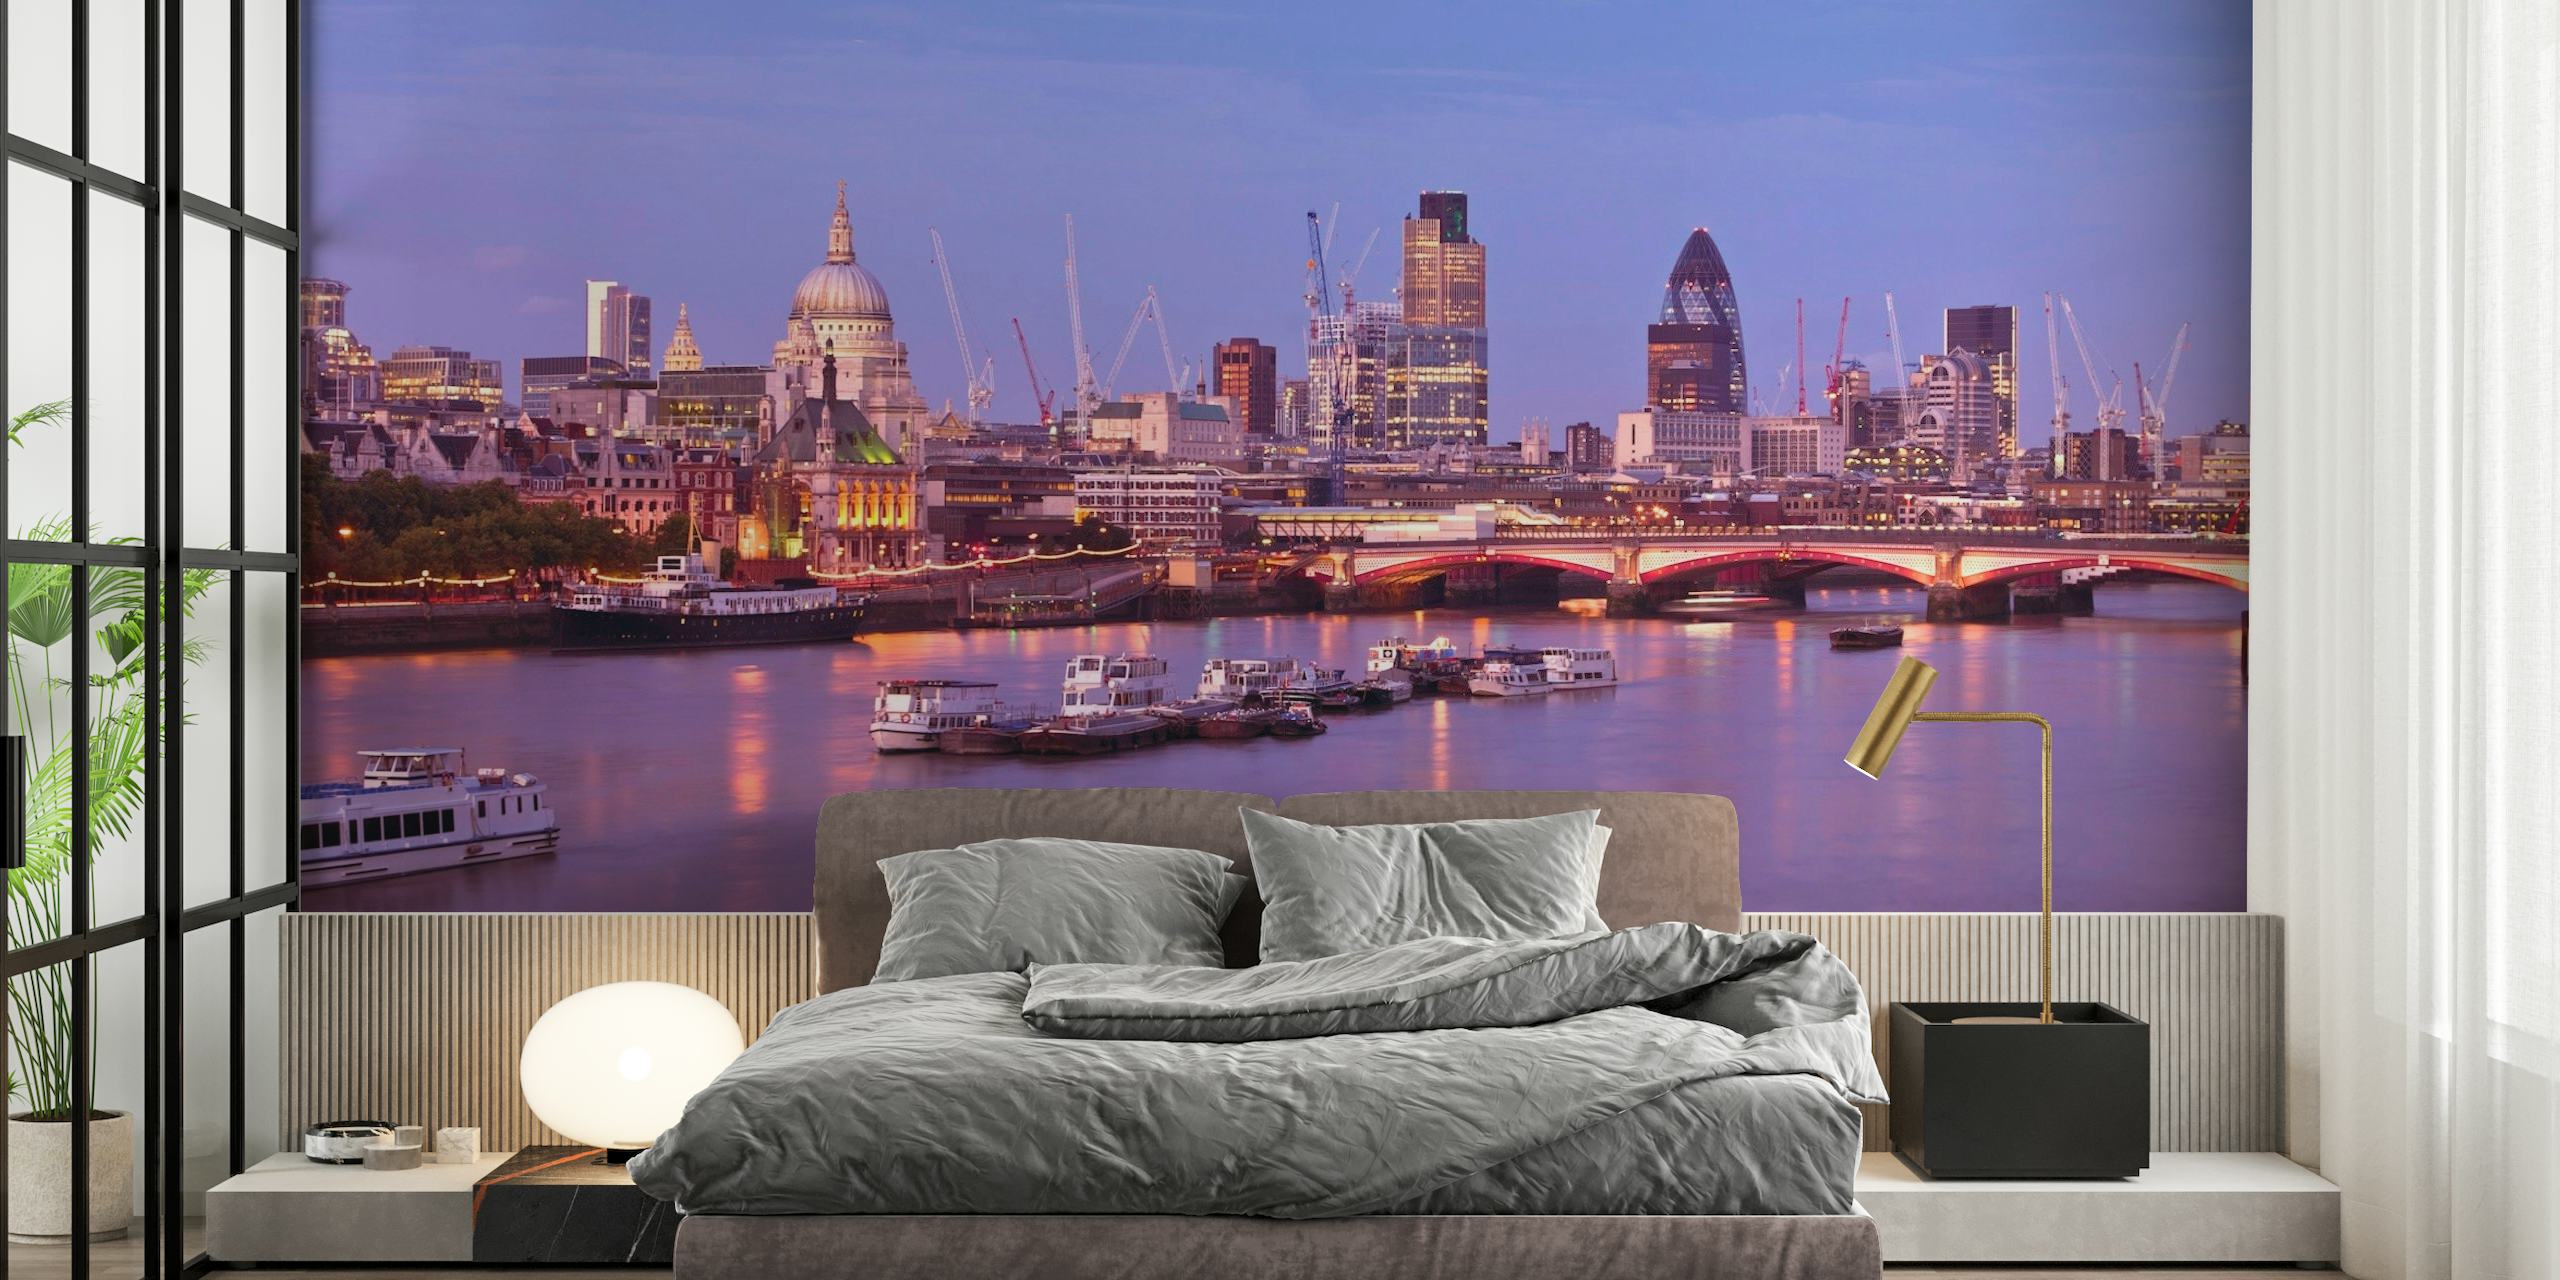 Fototapet av Themsen i London i skymningen med stadens silhuett